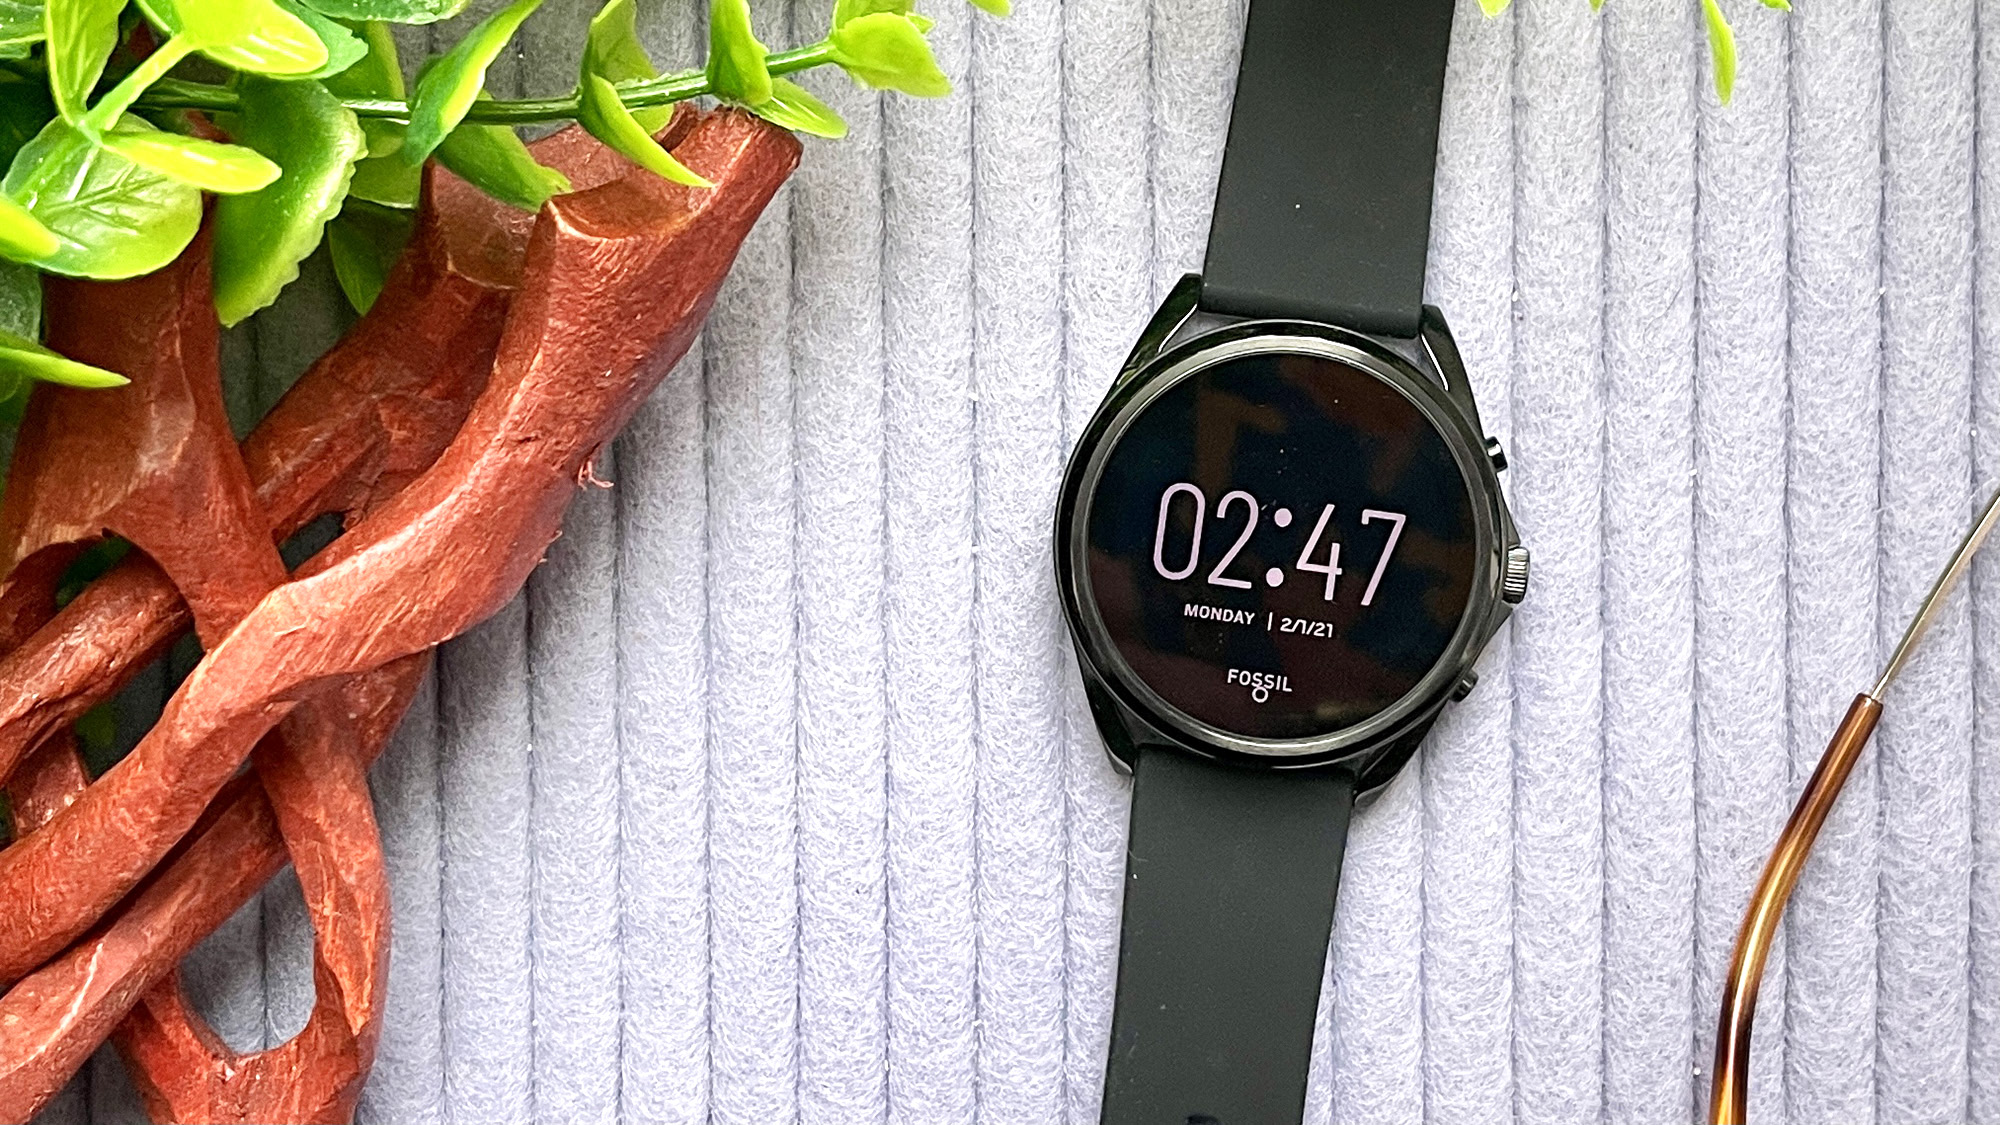 Gen 5 LTE Smartwatch Black Silicone